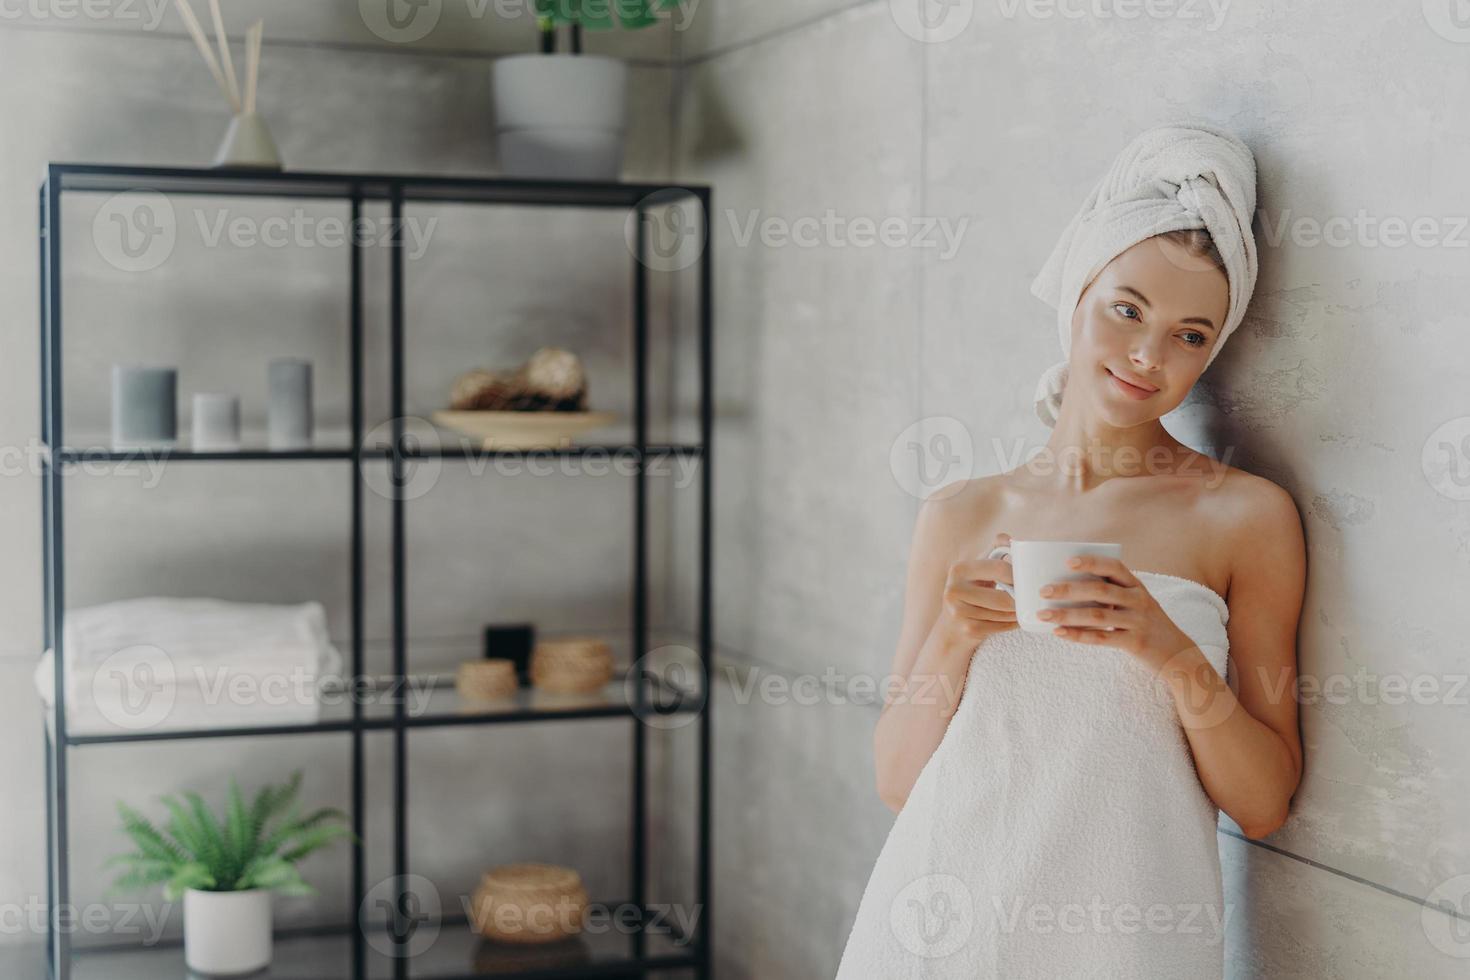 foto av en lugn avslappnad kvinna poserar i handduk mot badrumsinredning, insvept i badhandduk, dricker te eller kaffe, har ren perfekt hud, lutar sig mot den grå väggen. skönhetsdag, spa och hudvårdsbehandling